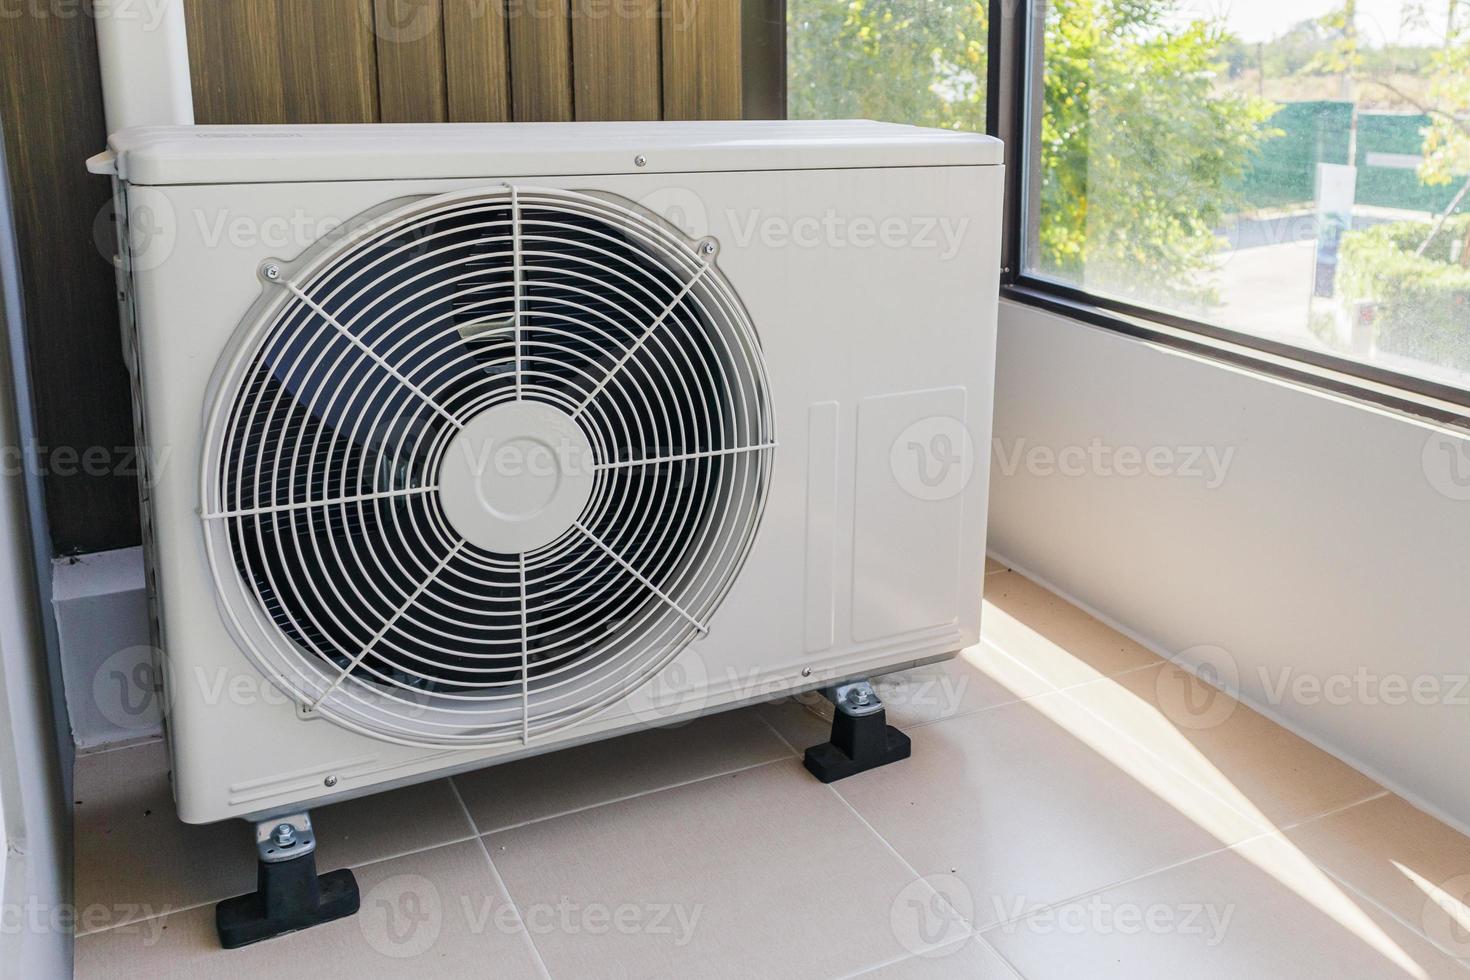 compresor de unidad exterior de aire acondicionado instalado fuera de la casa foto